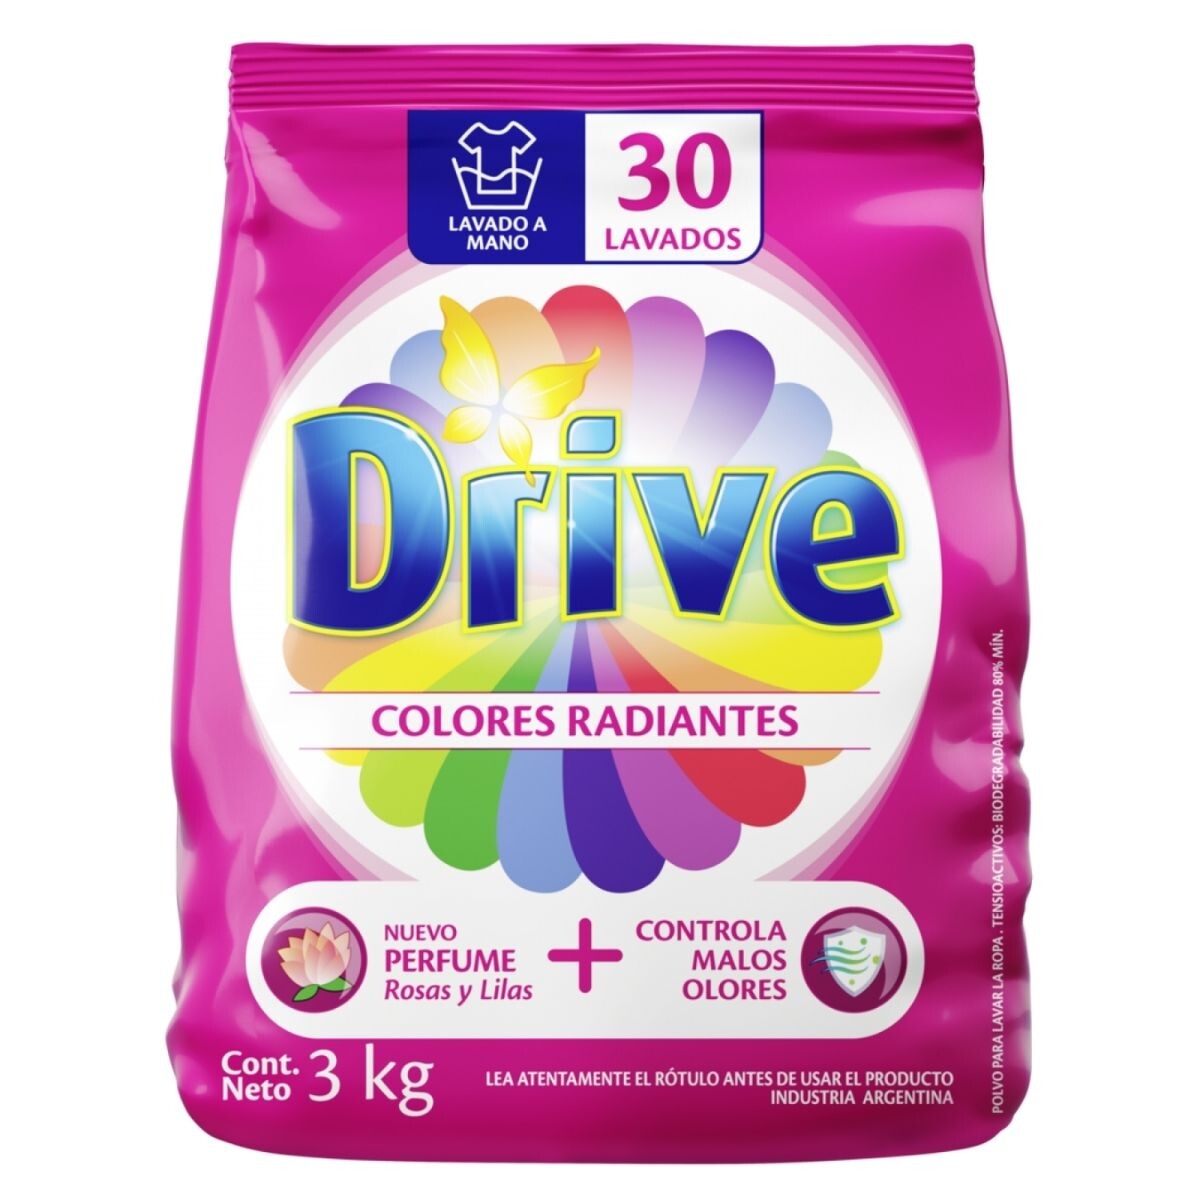 Jabón en Polvo Drive Colores Radiantes Lavado a Mano 3 KG 